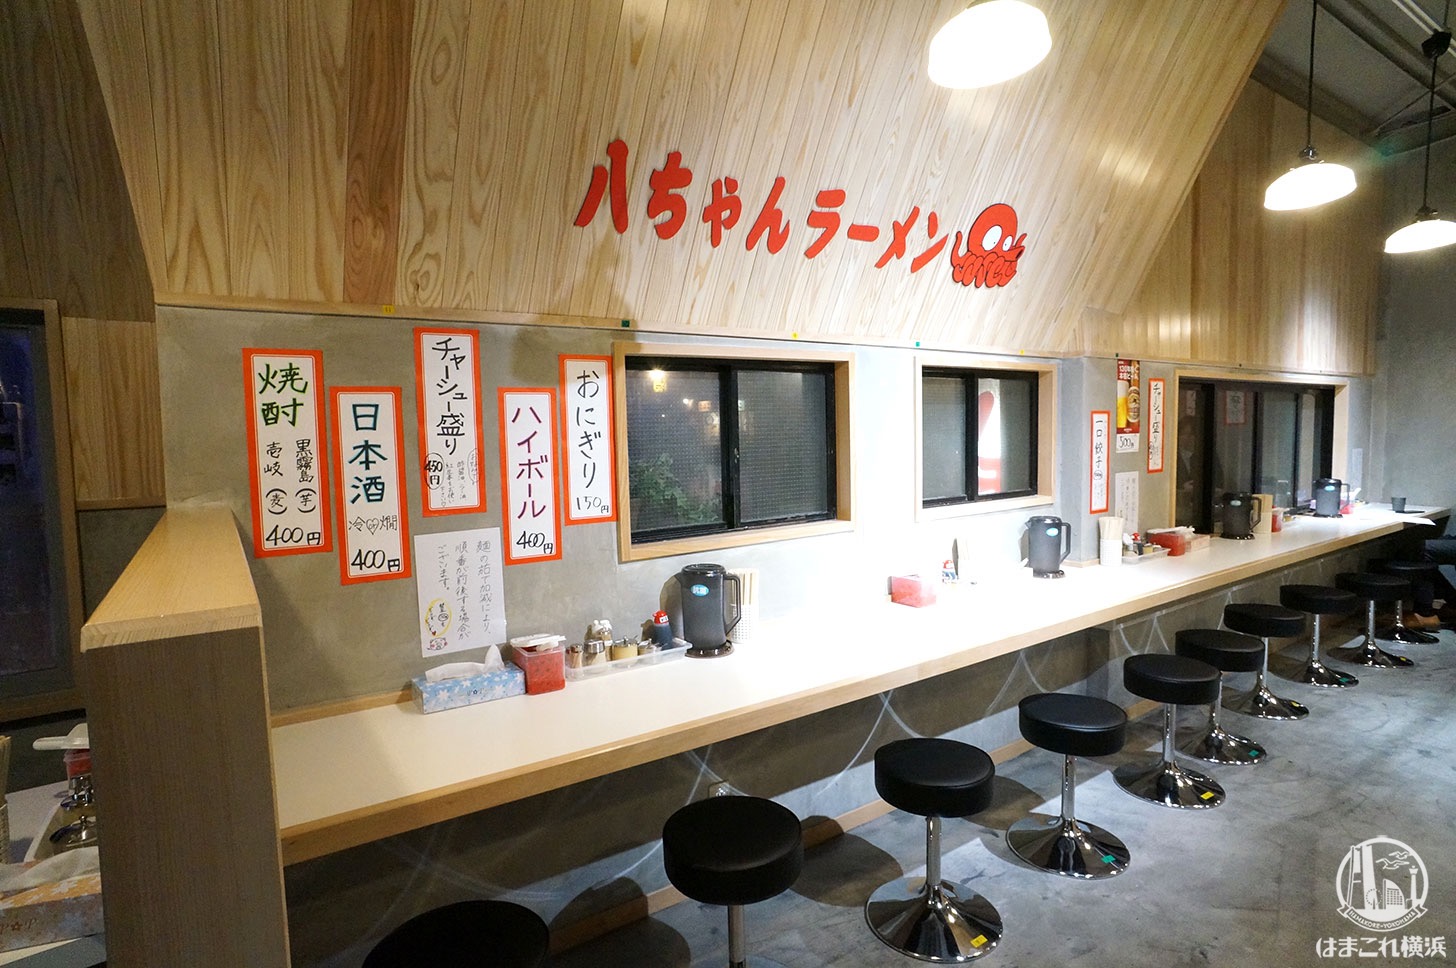 八ちゃんラーメン 新横浜ラーメン博物館 店内のカウンター席